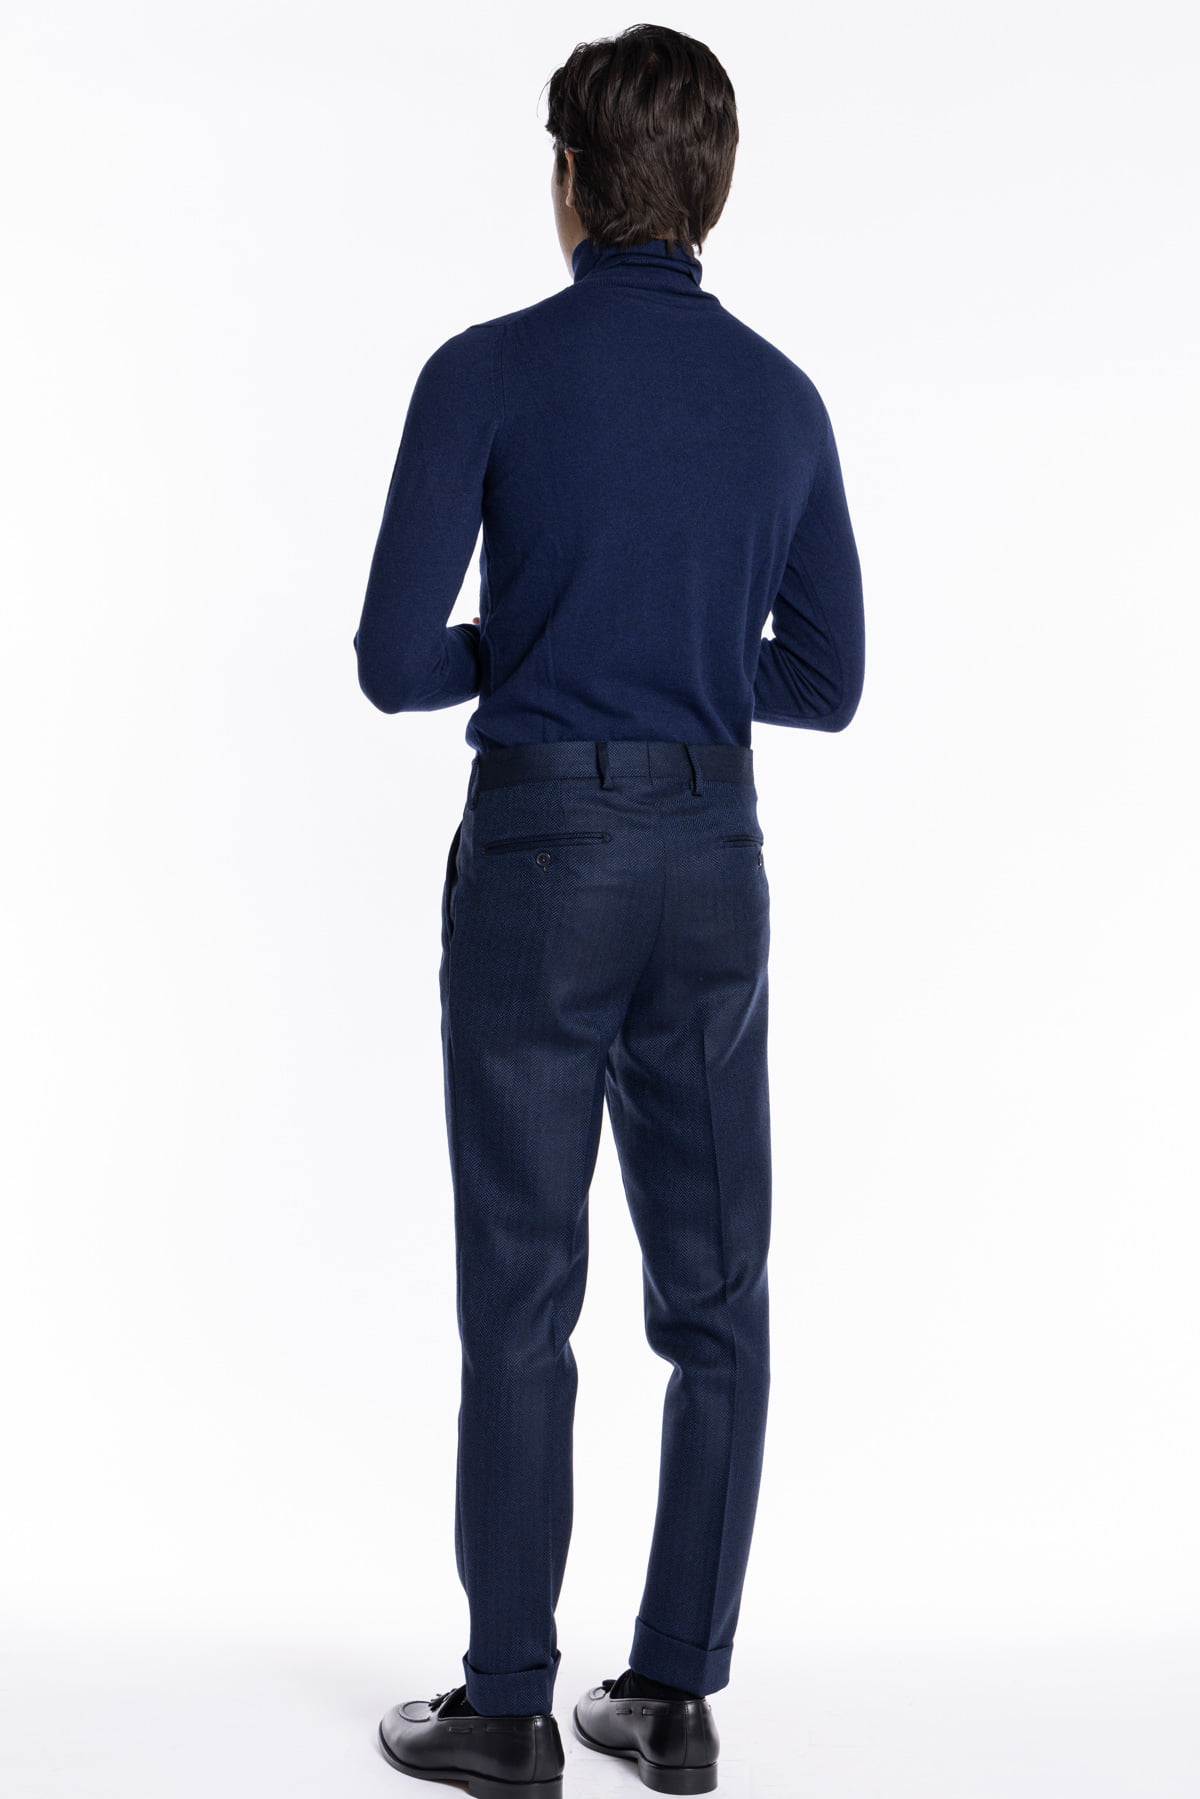 Pantalone uomo blu spigato chiusura prolungata doppia pinces in lana flanella al 100% Bristol Tessuti Napoli